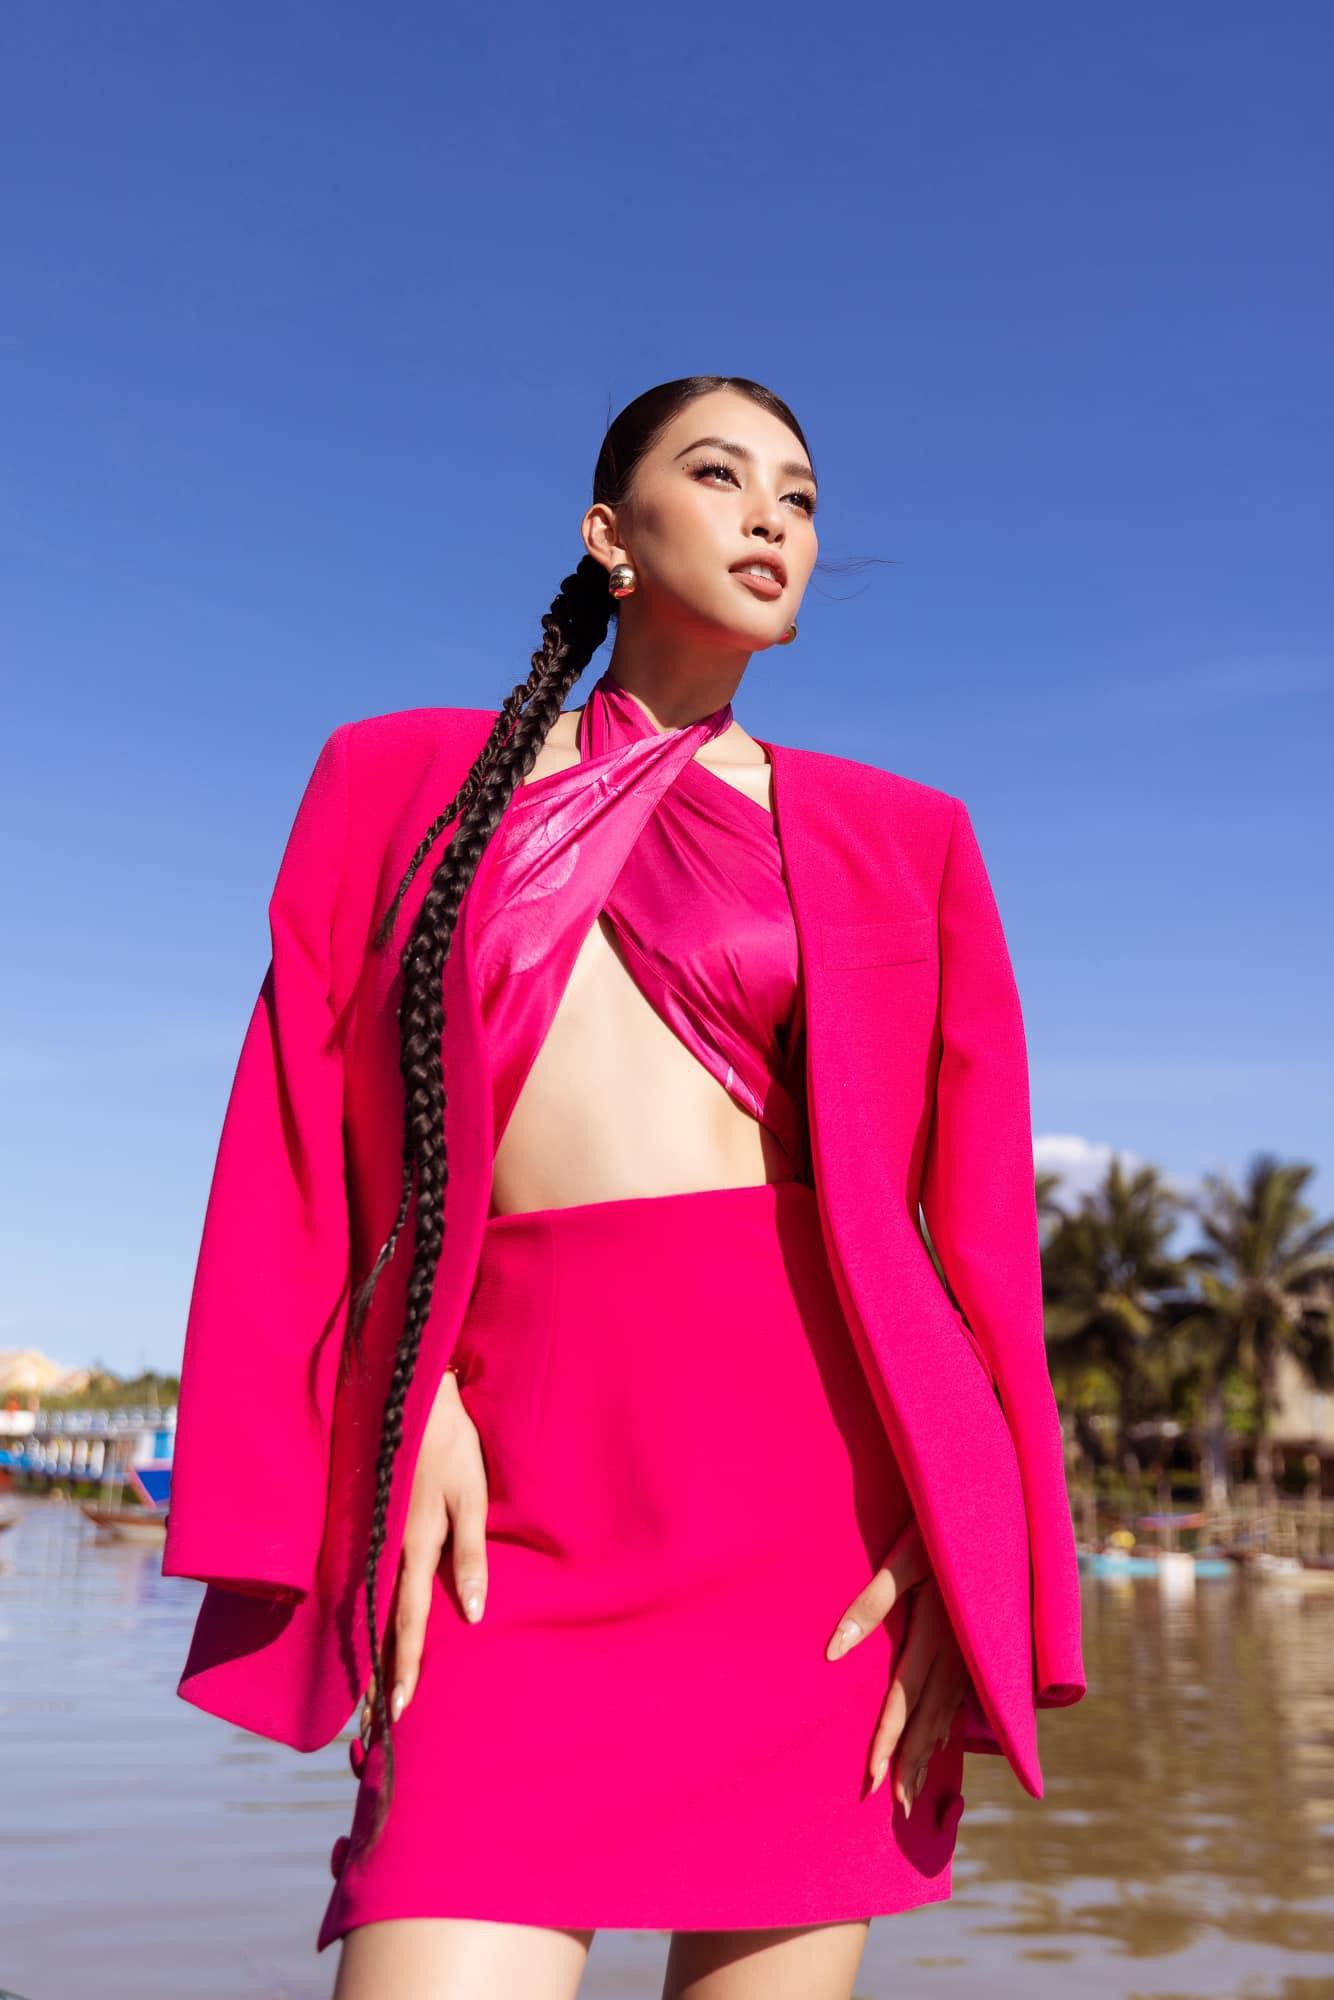 Dàn Hoa - Á hậu mê mẩn kiểu váy như đồ bơi: Thuỳ Tiên, Lương Thuỳ Linh nổi bật với vóc dáng sexy  - Ảnh 16.